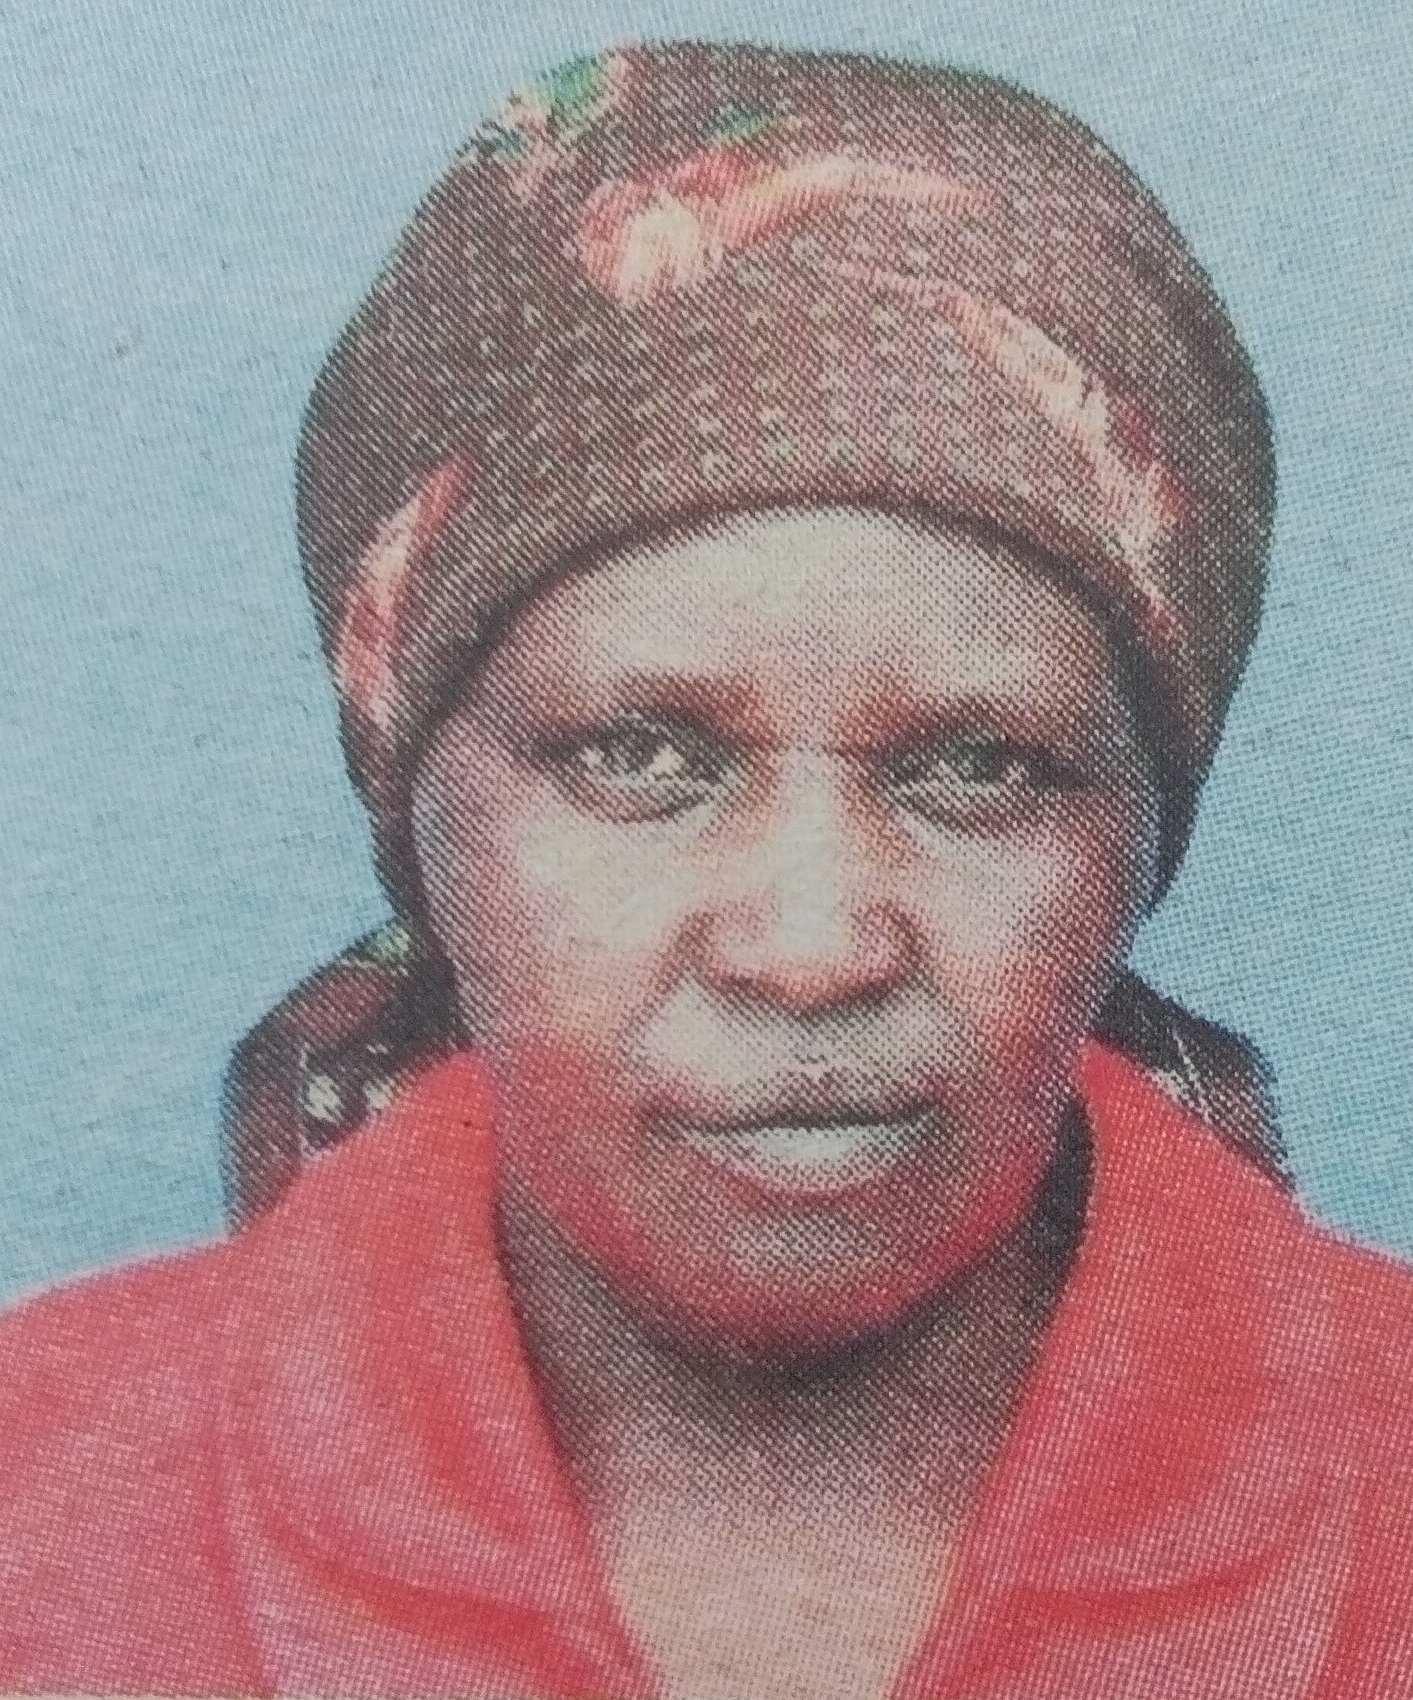 Obituary Image of Lucy Wanjiku Muchai